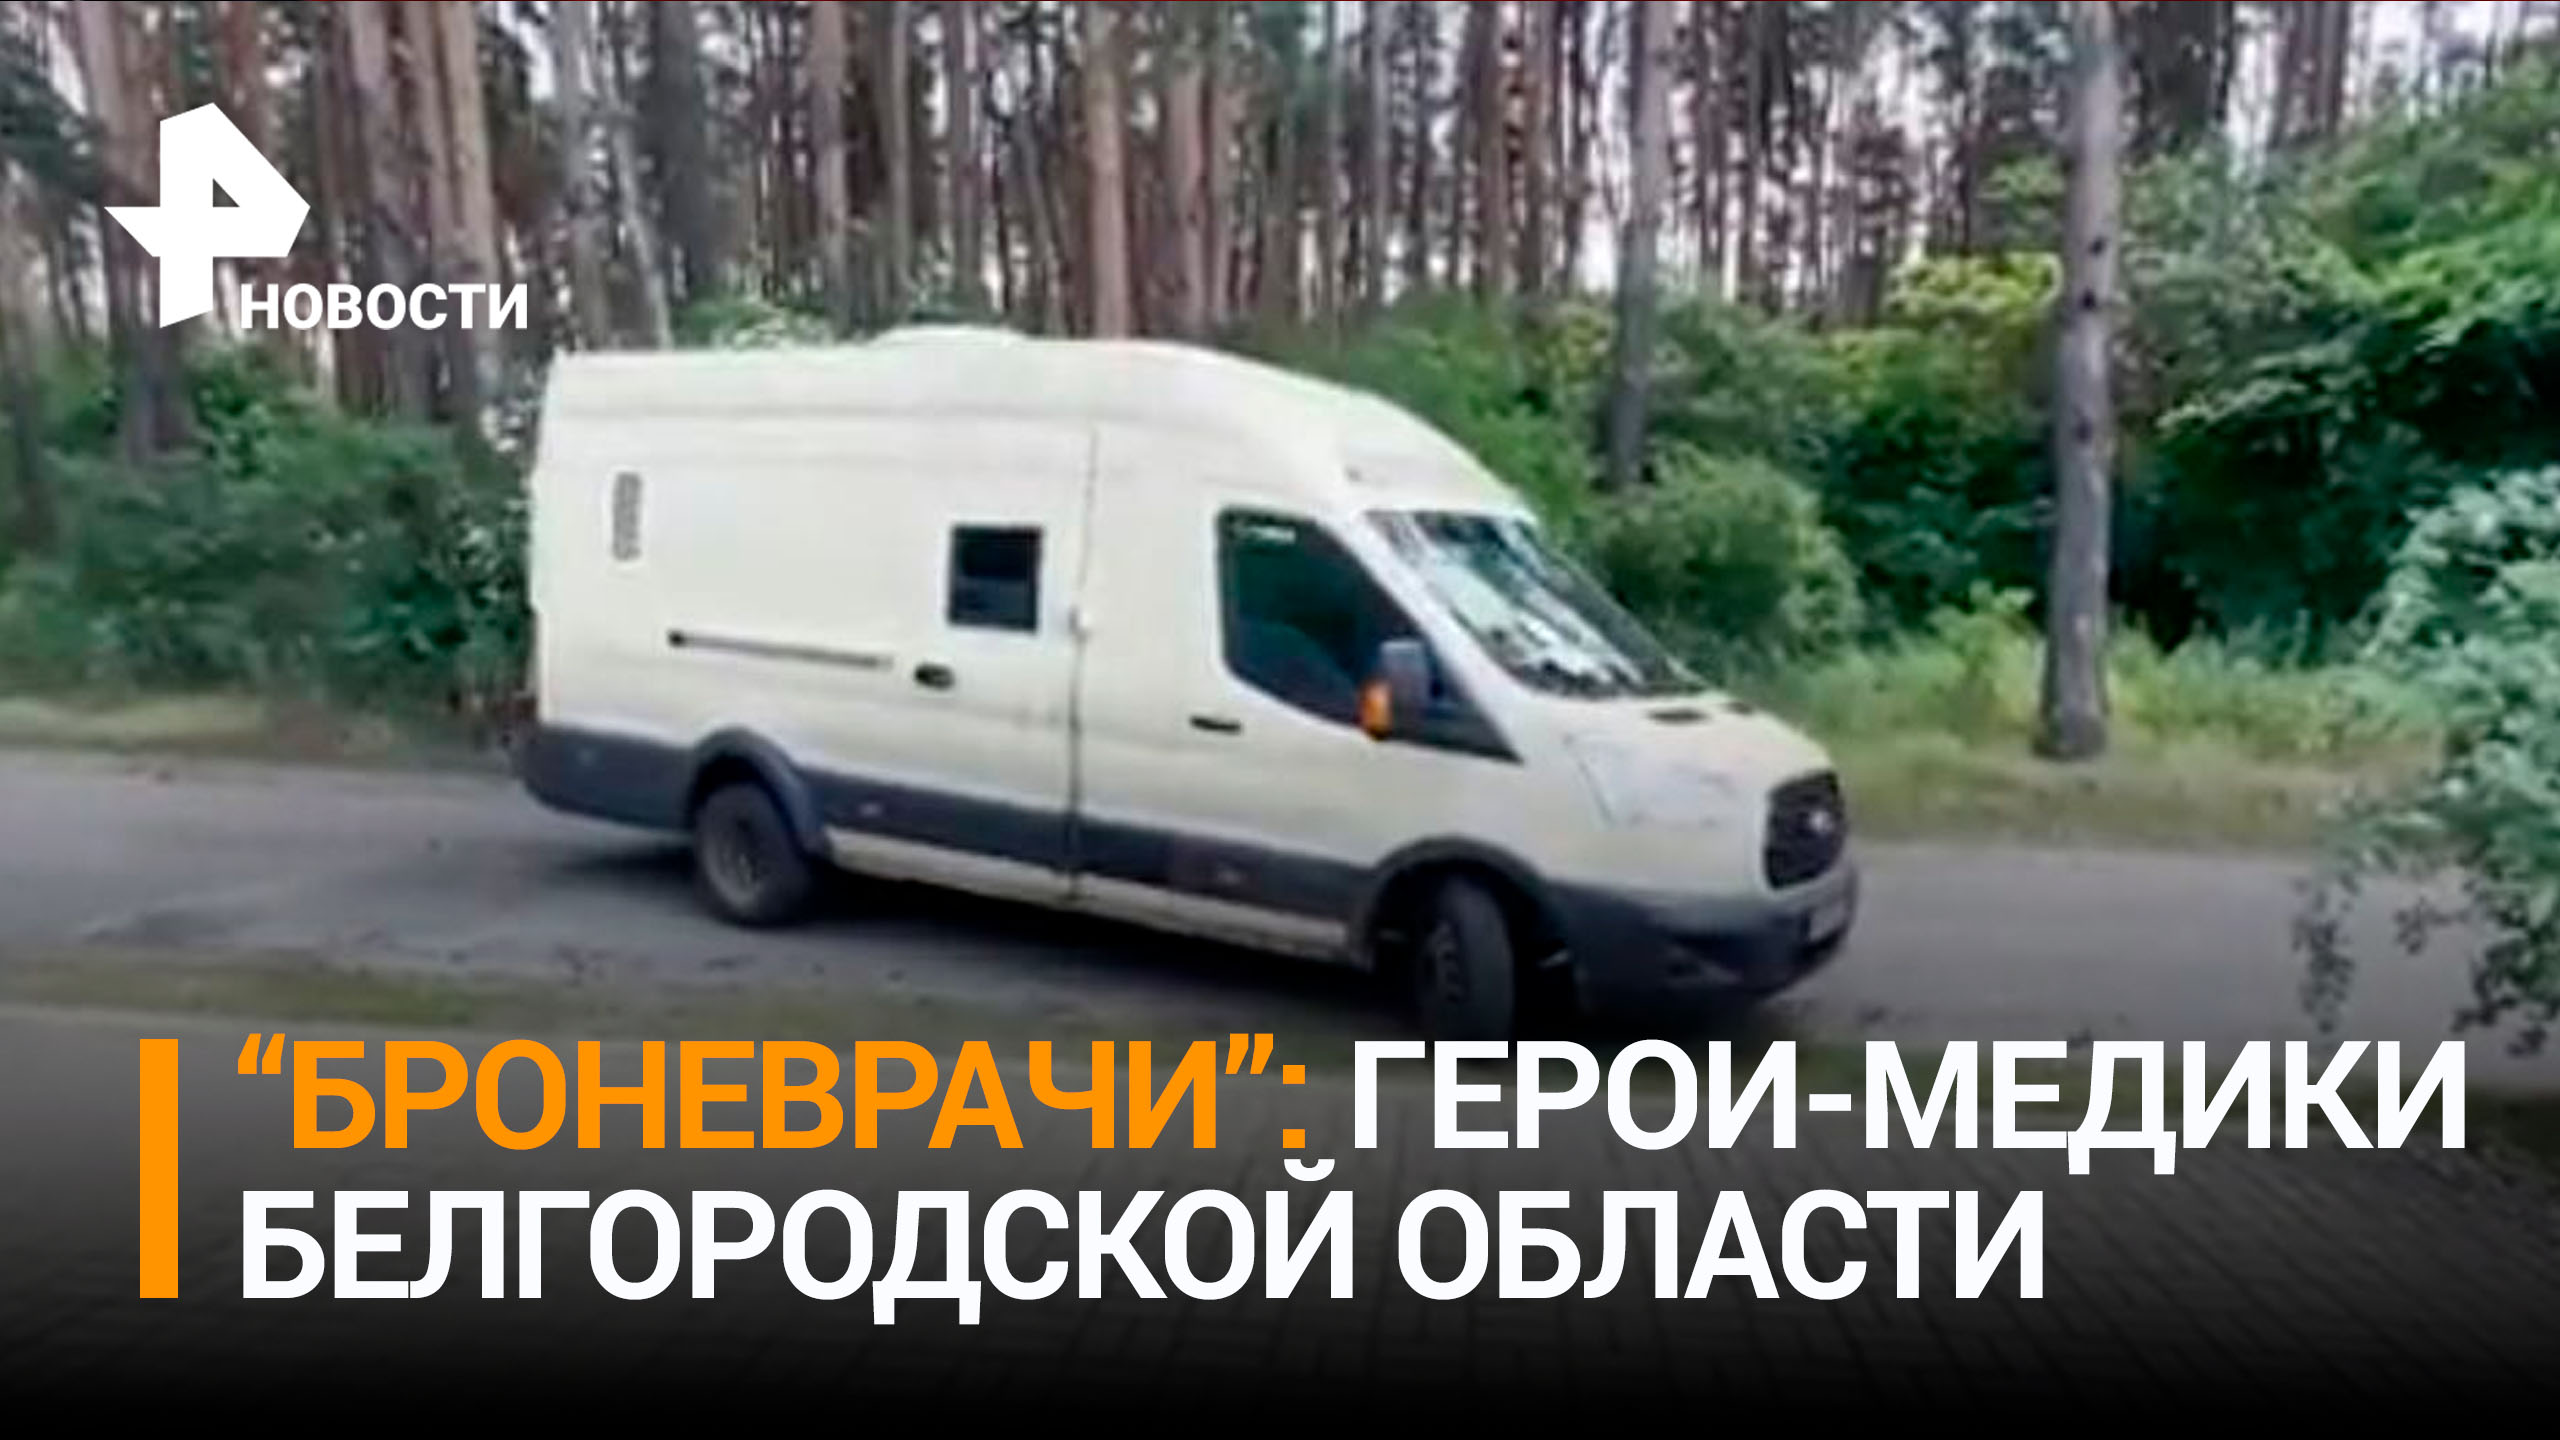 Как белгородские врачи помогают людям и спасают их под обстрелами ВСУ / РЕН Новости